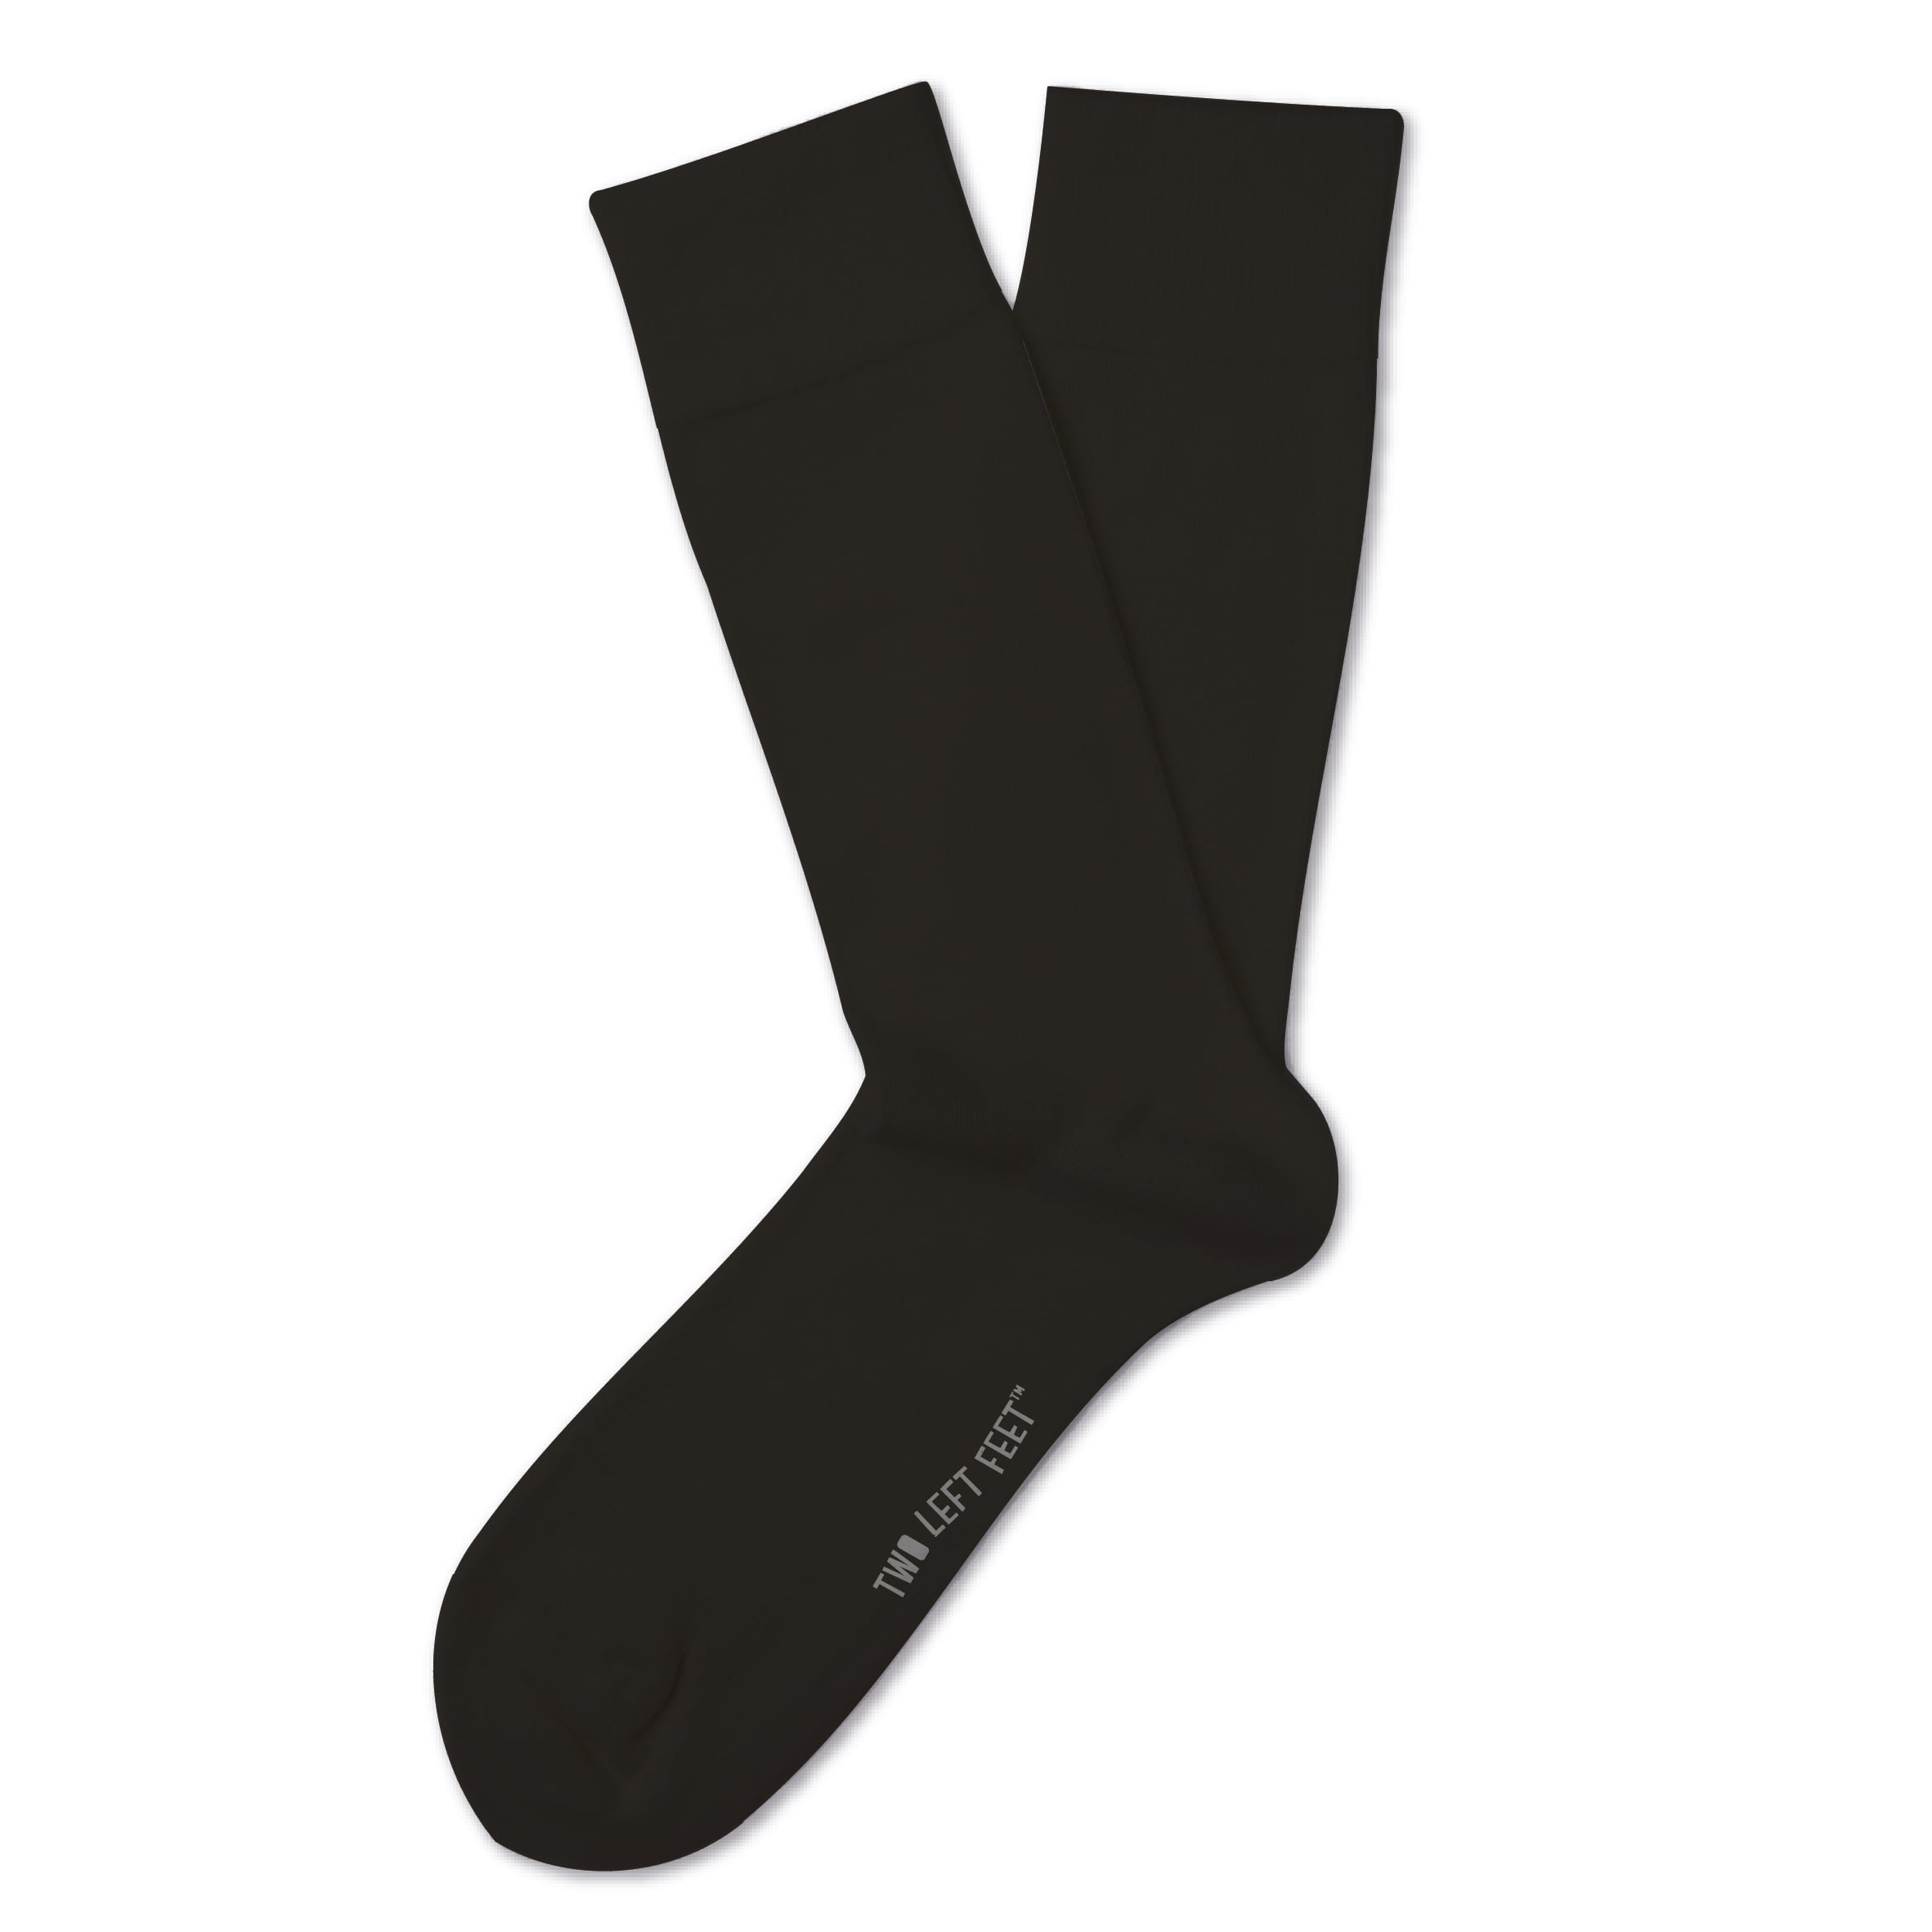 Two Left Feet Totally Boring Socks - Walmart.com